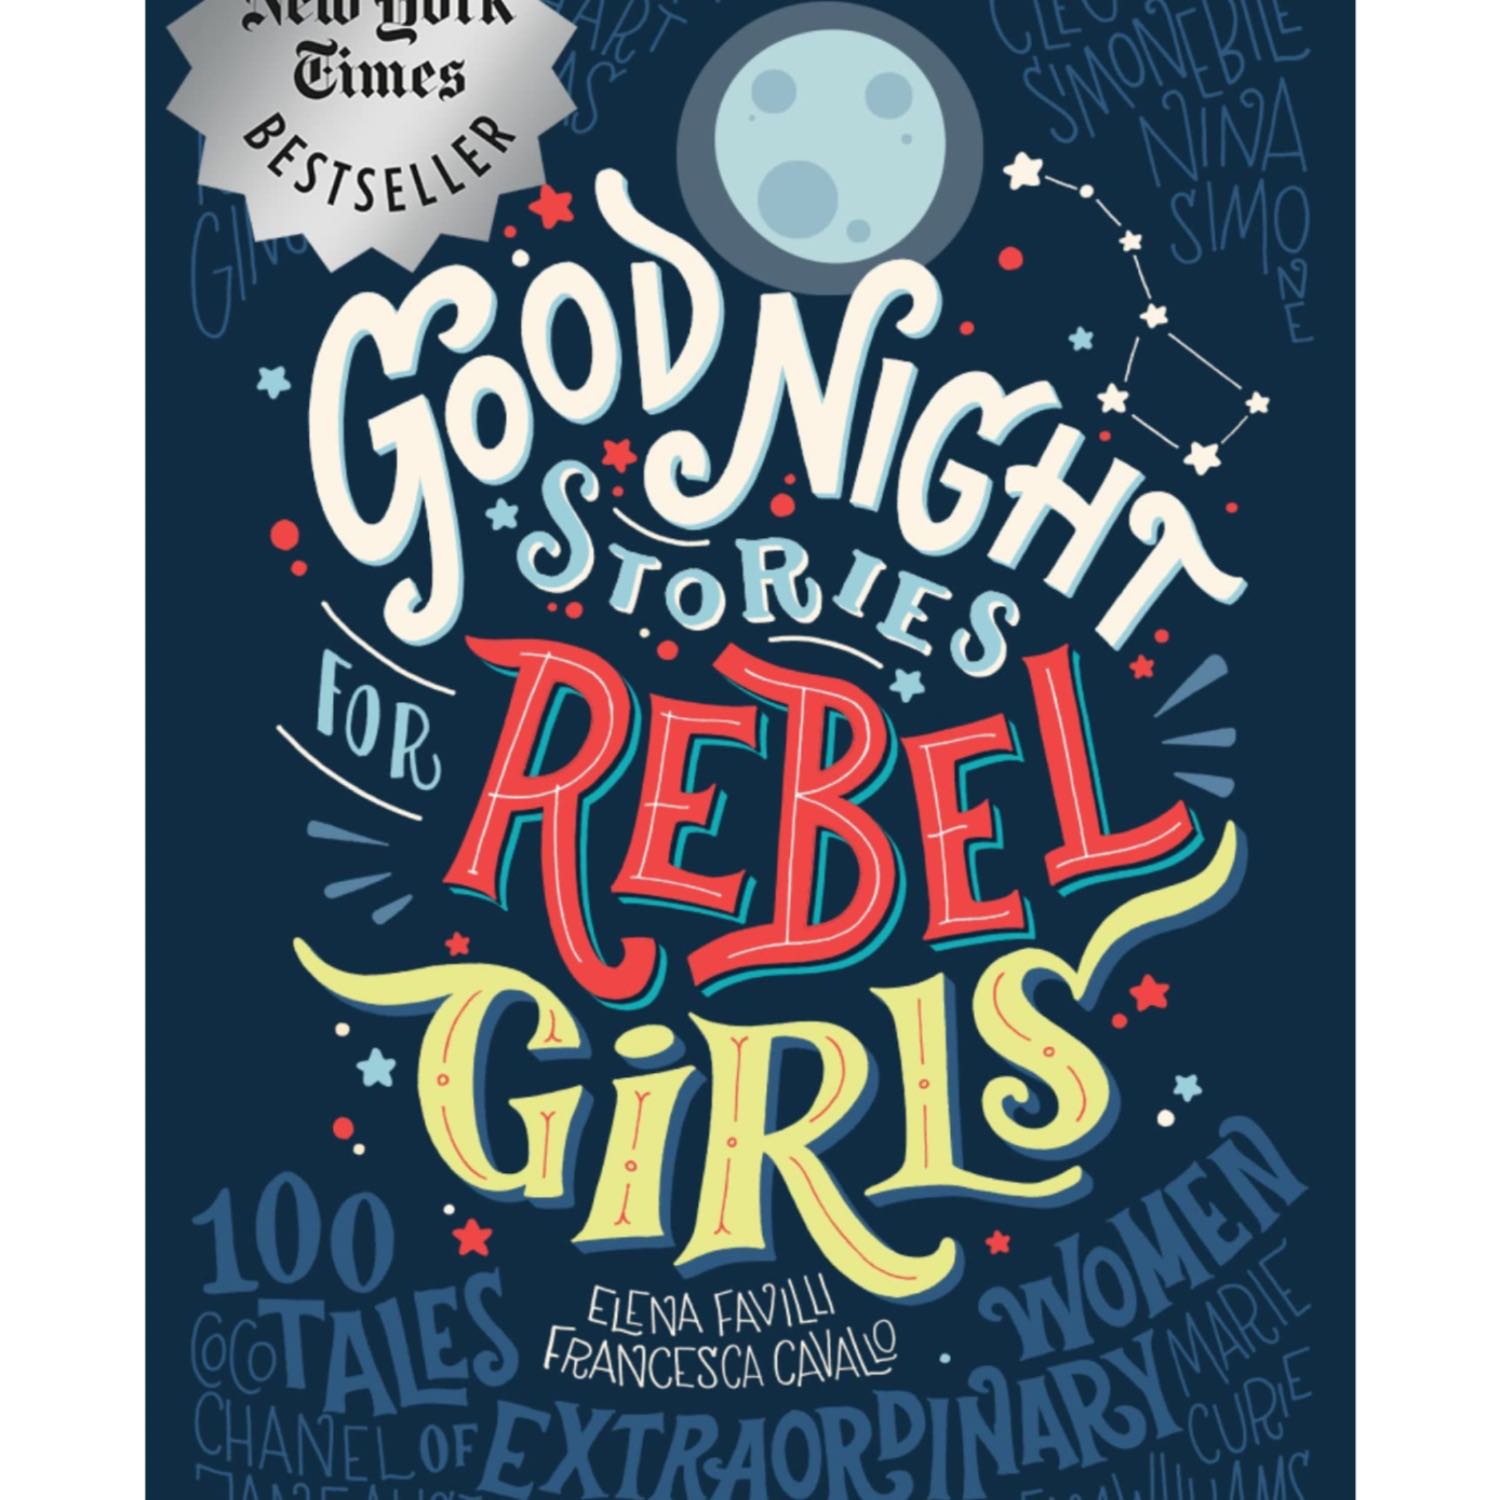 Goodnight Stories for Rebel Girls: Miriam Makaba